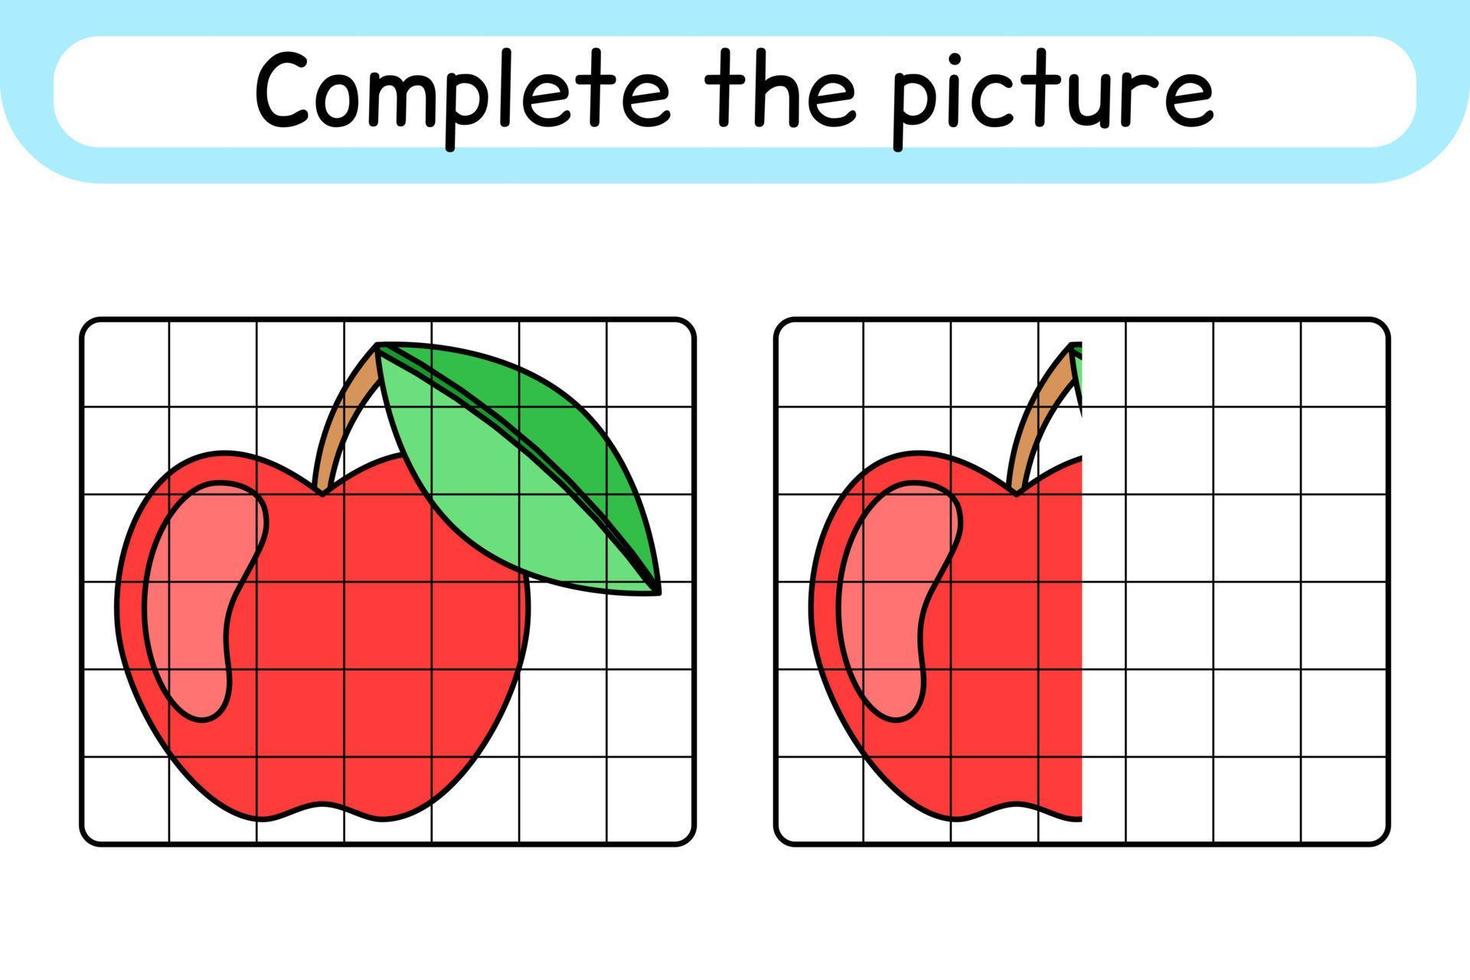 komplett de bild äpple. kopia de bild och Färg. Avsluta de bild. färg bok. pedagogisk teckning övning spel för barn vektor